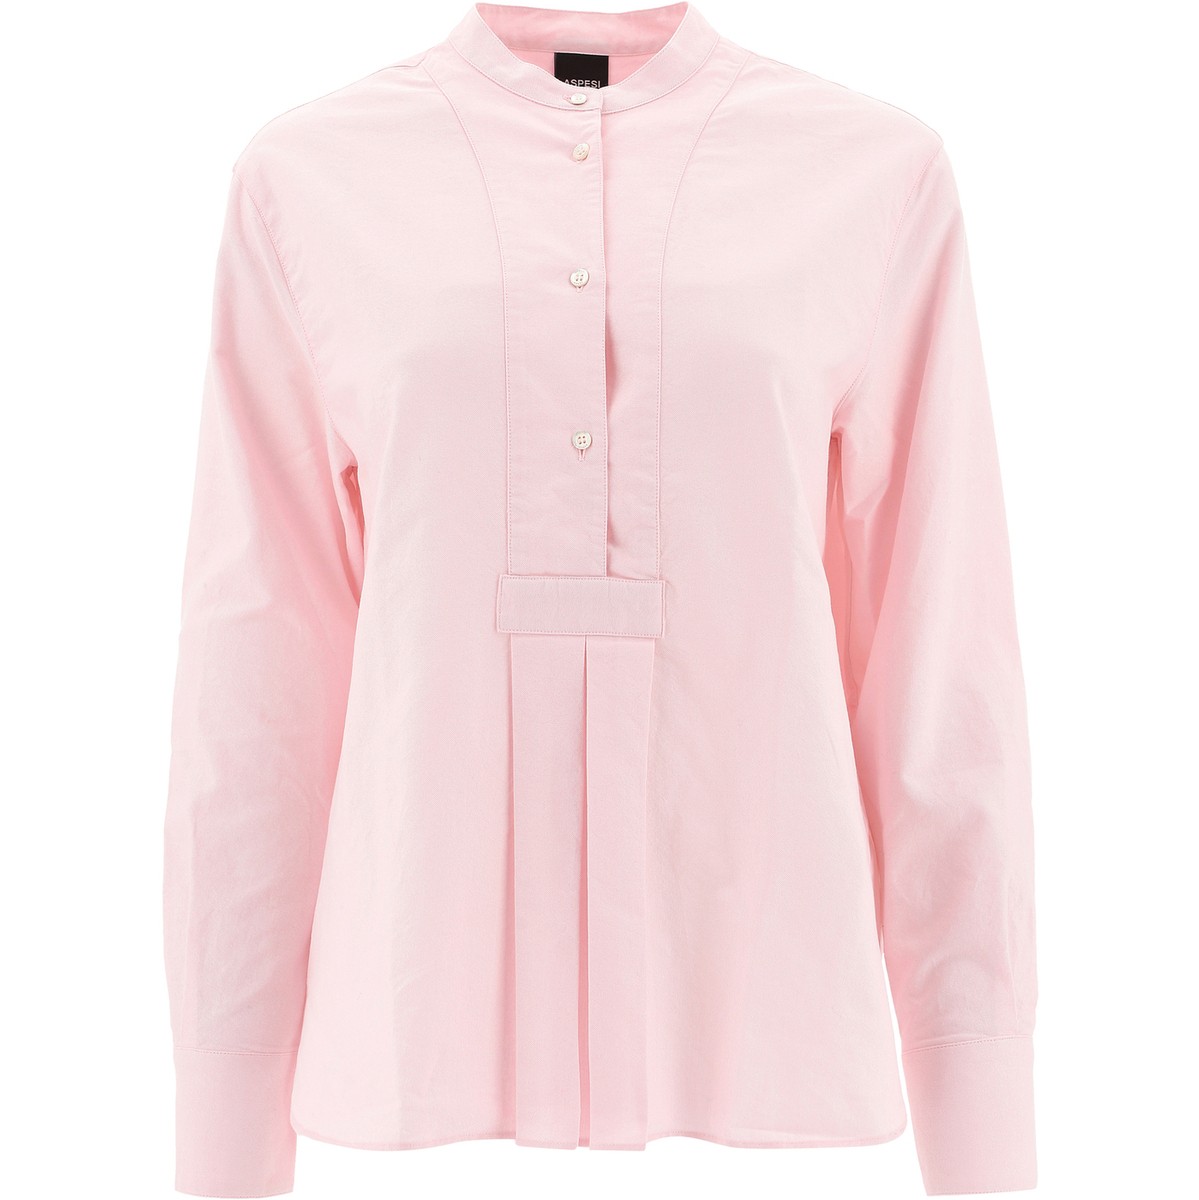 ASPESI アスペジ ピンク Pink Korean shirt シャツ レディース 5402L61401284 【関税・送料無料】【ラッピング無料】 vi